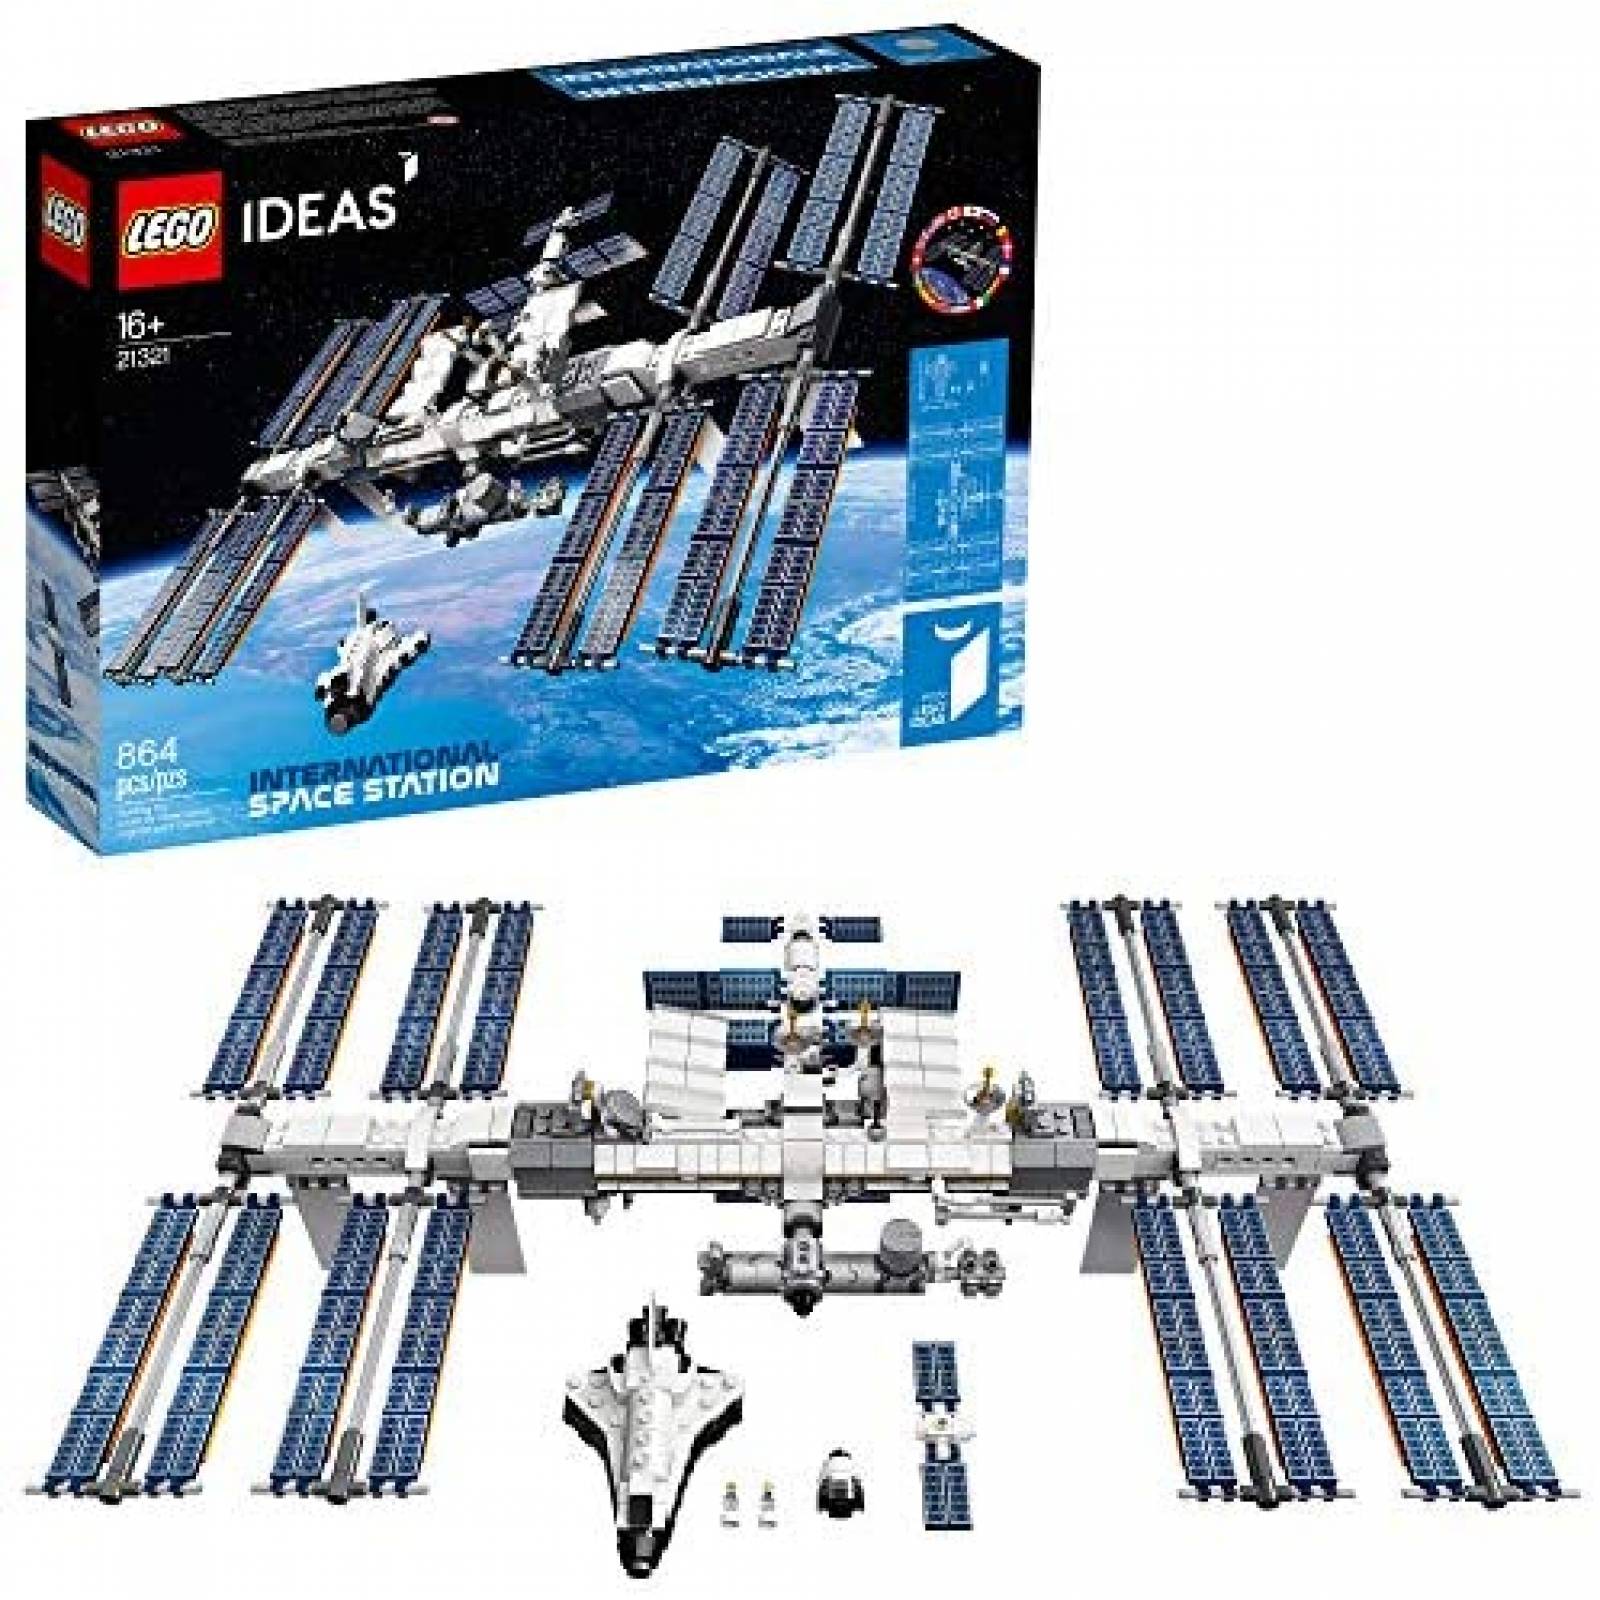 Set de Construcción LEGO International Space Station 864 Pzs